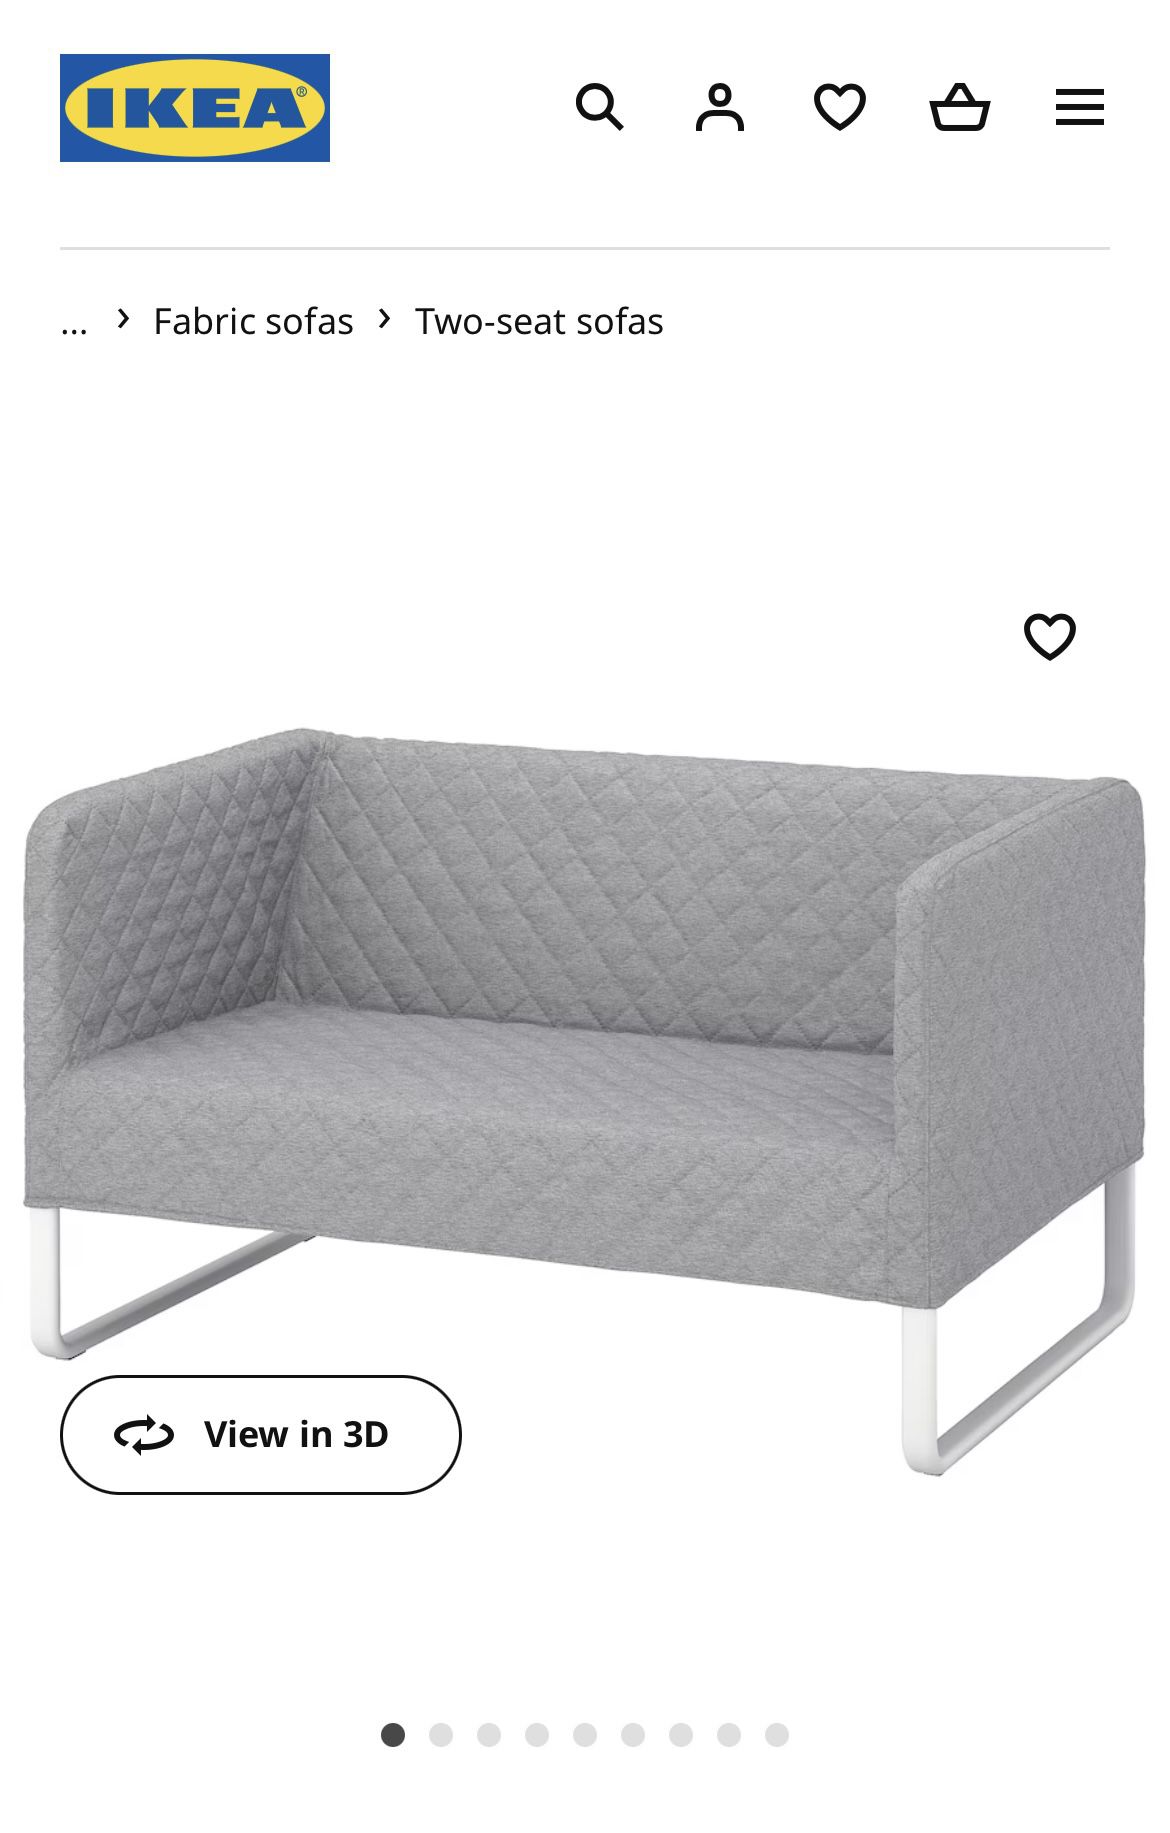 IKEA 2 Seat Sofa